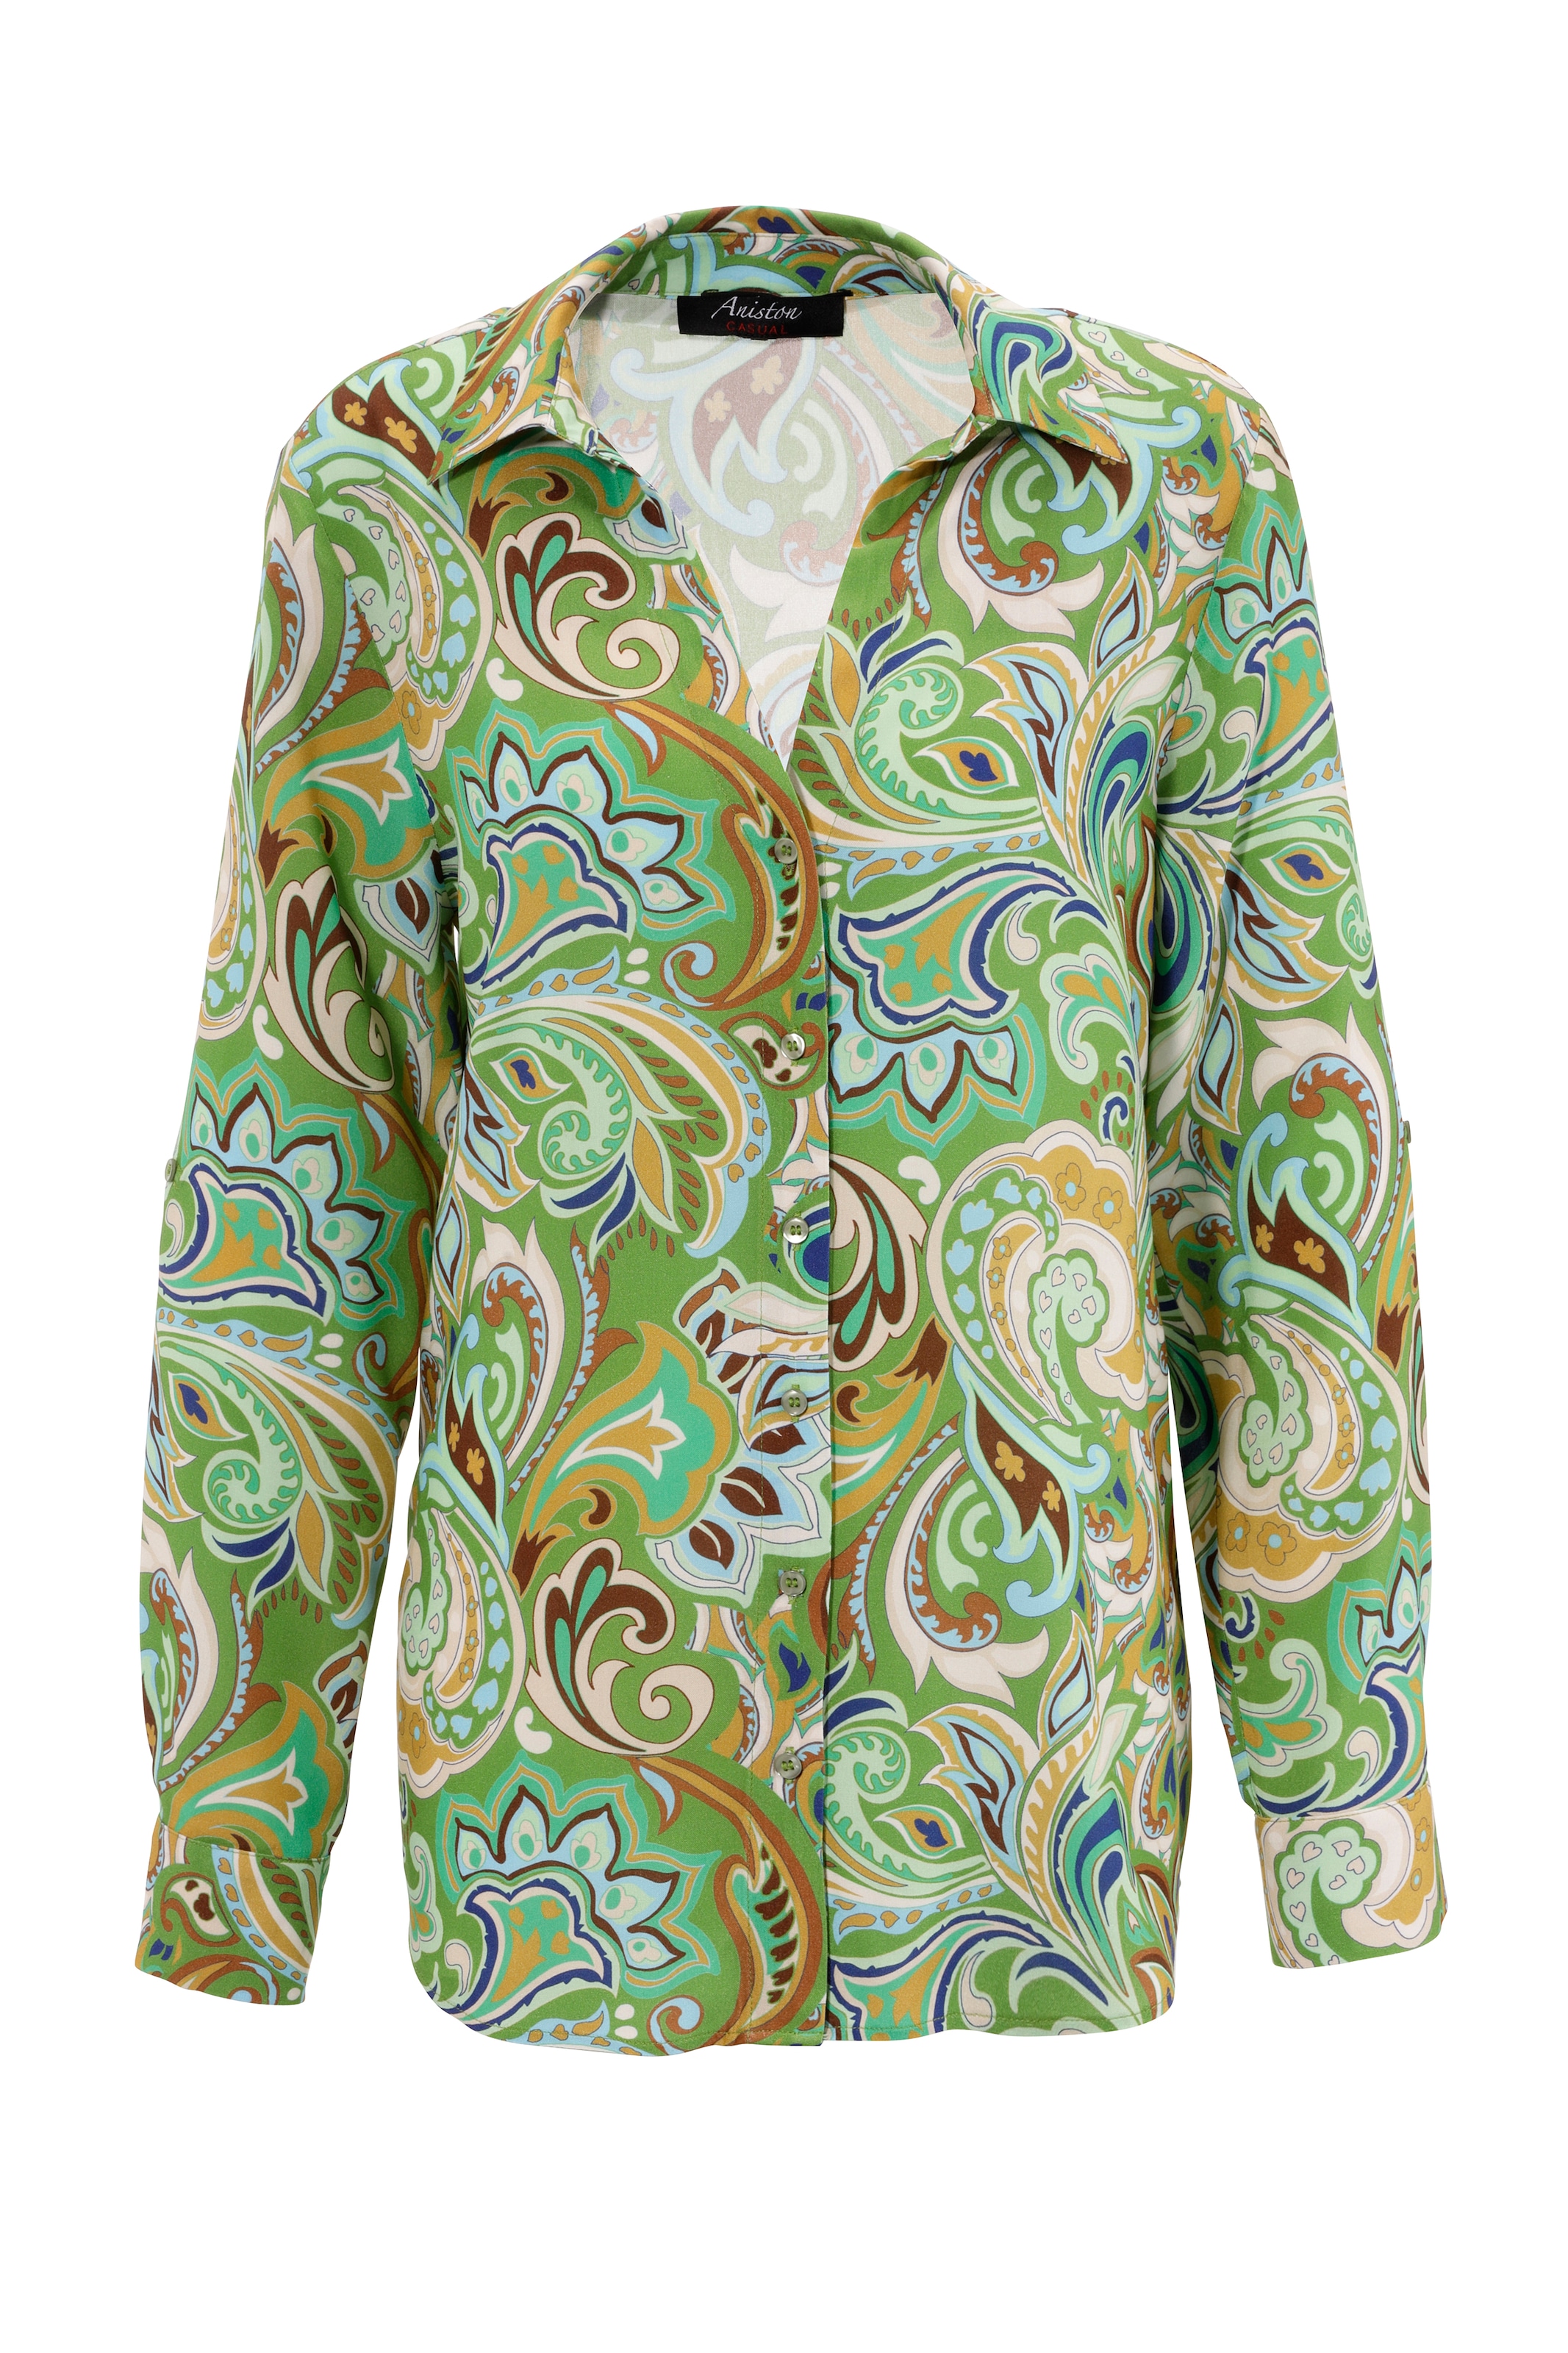 Unikat CASUAL jedes kaufen Teil ein online graphische Hemdbluse, Paisley-Muster Aniston -